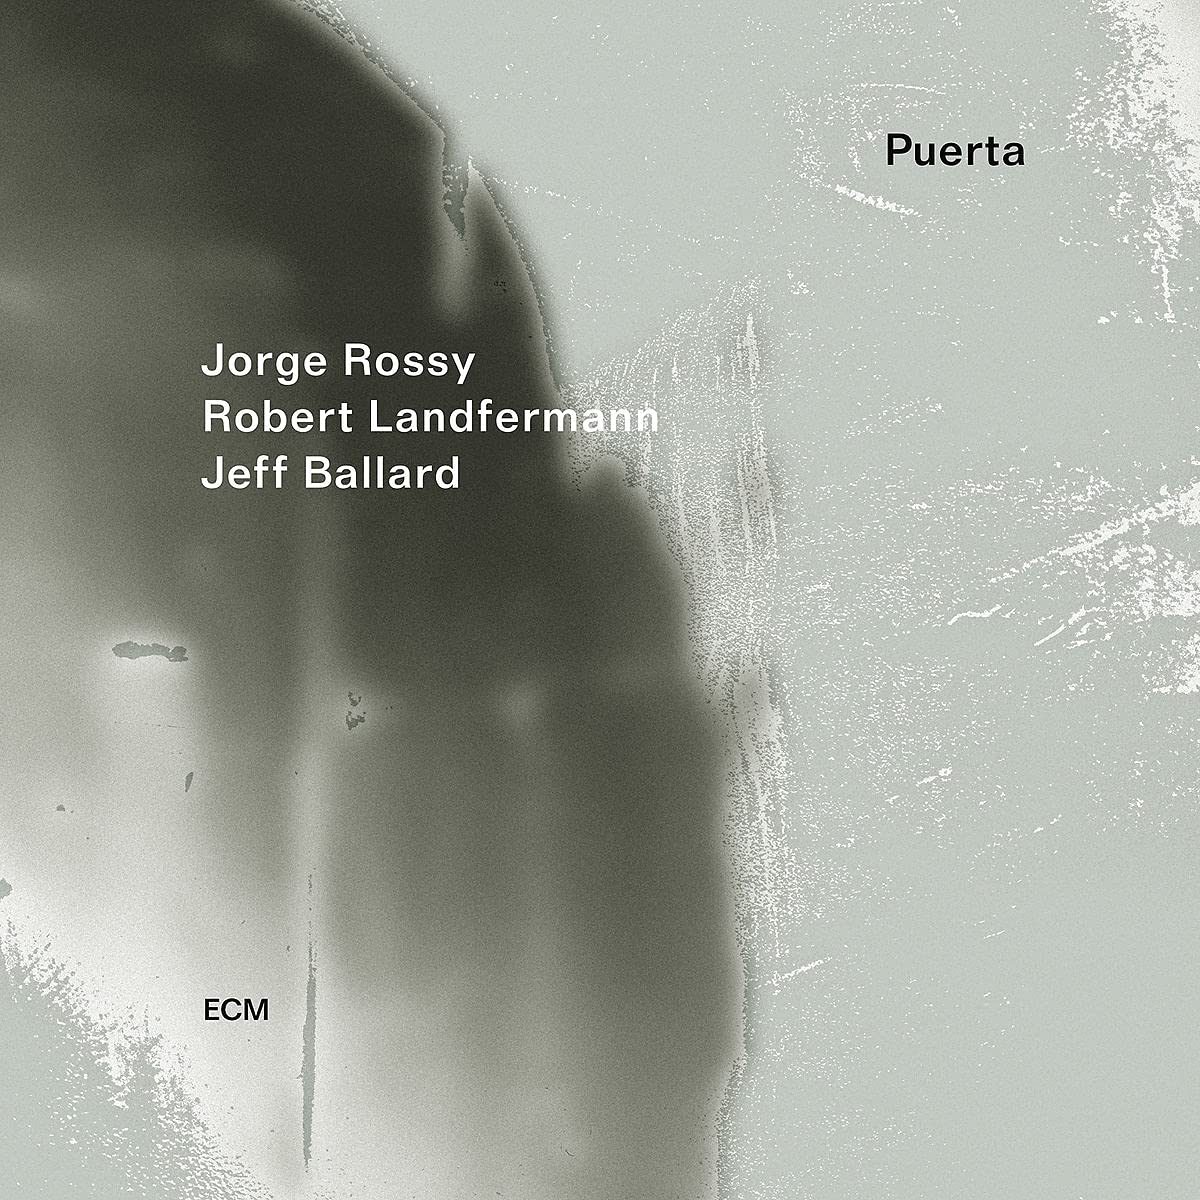 JORGE ROSSY „PUERTA” – najnowsza płyta pianisty i wibrafonisty, nagrana dla wydawnictwa ECM Records